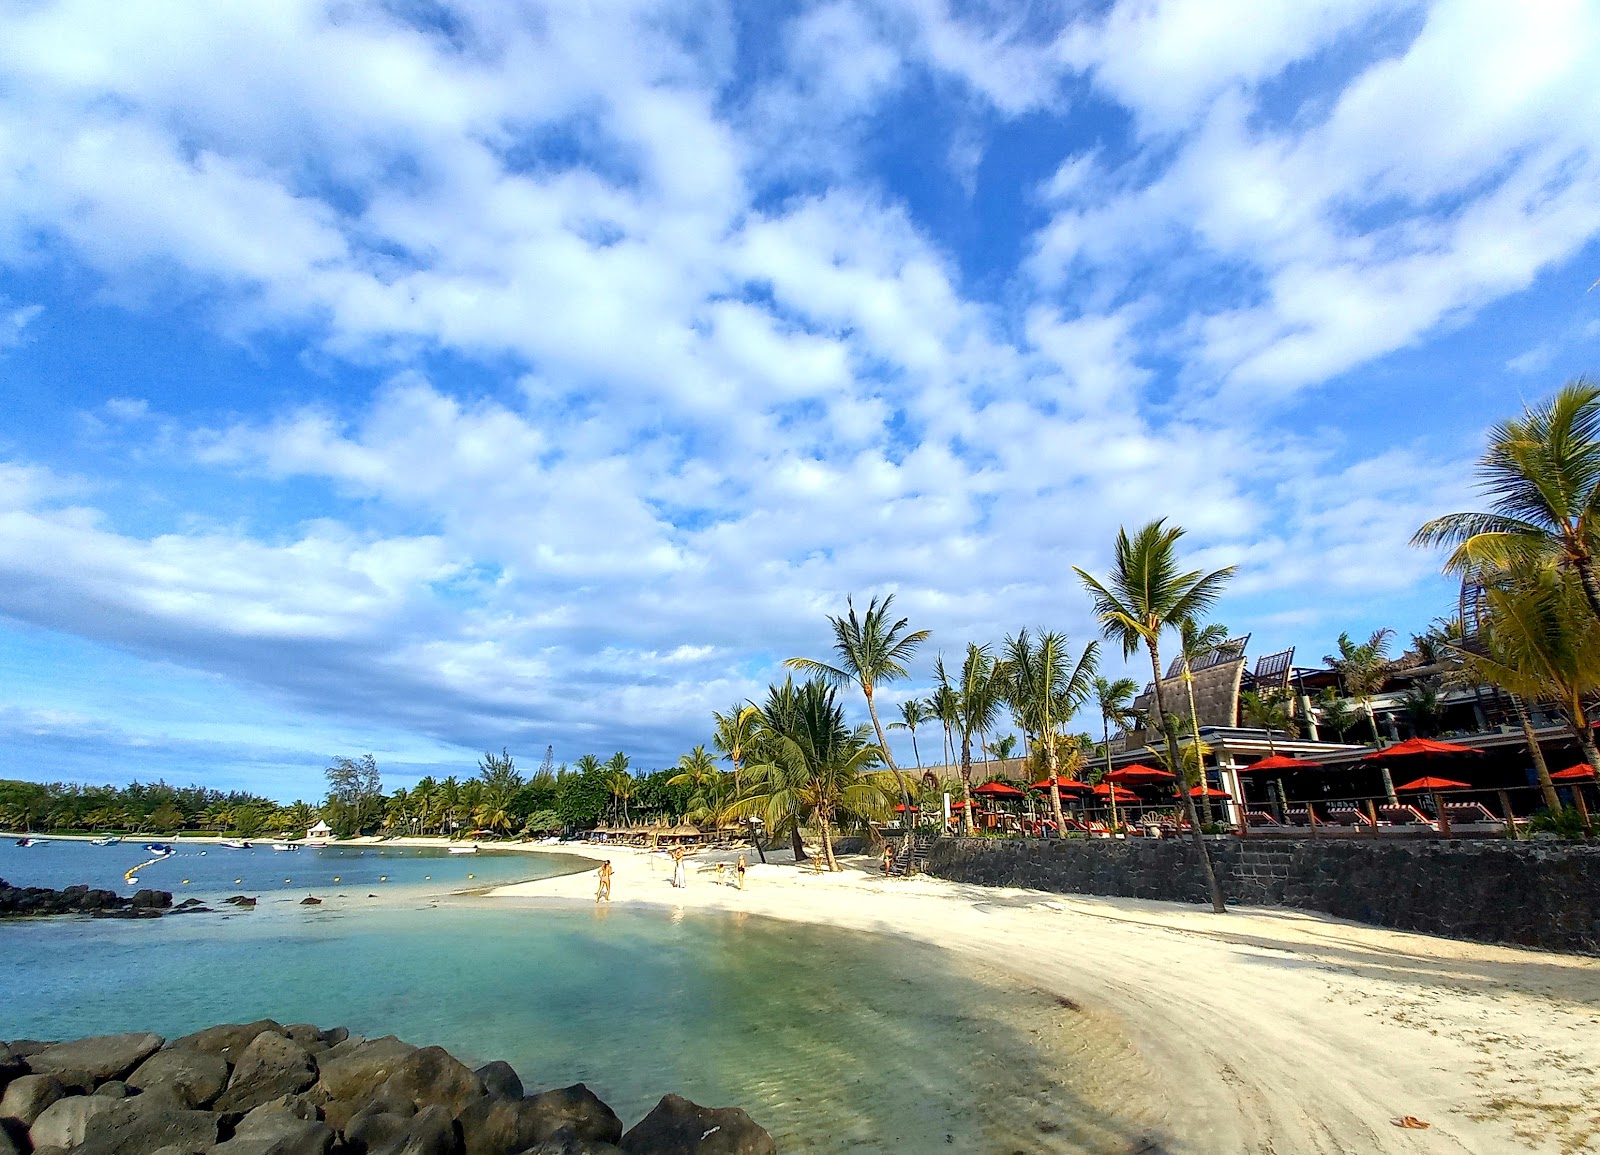 Foto de CocoNuts Resot Beach - lugar popular entre los conocedores del relax